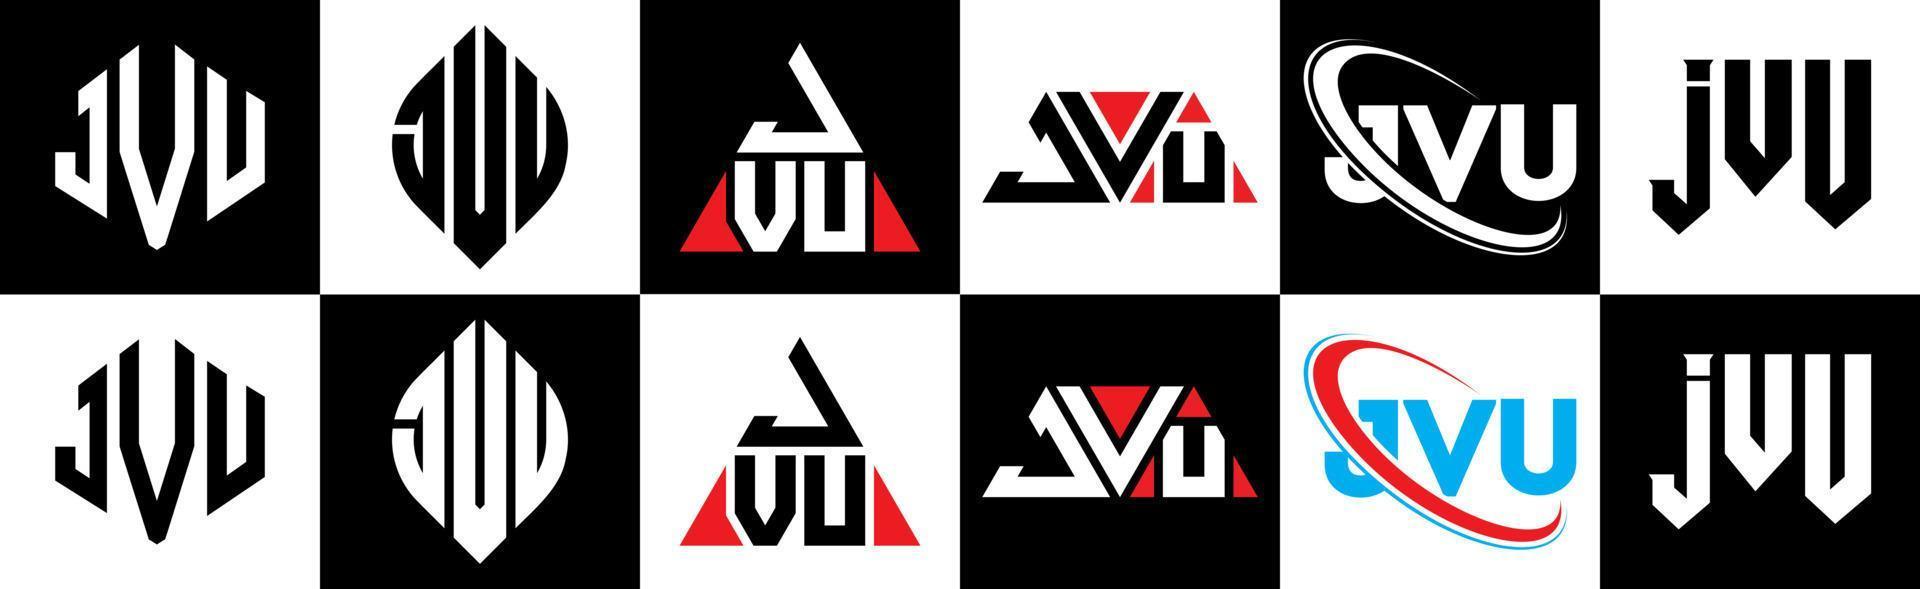 jvu brief logo ontwerp in zes stijl. jvu veelhoek, cirkel, driehoek, zeshoek, vlak en gemakkelijk stijl met zwart en wit kleur variatie brief logo reeks in een tekengebied. jvu minimalistische en klassiek logo vector